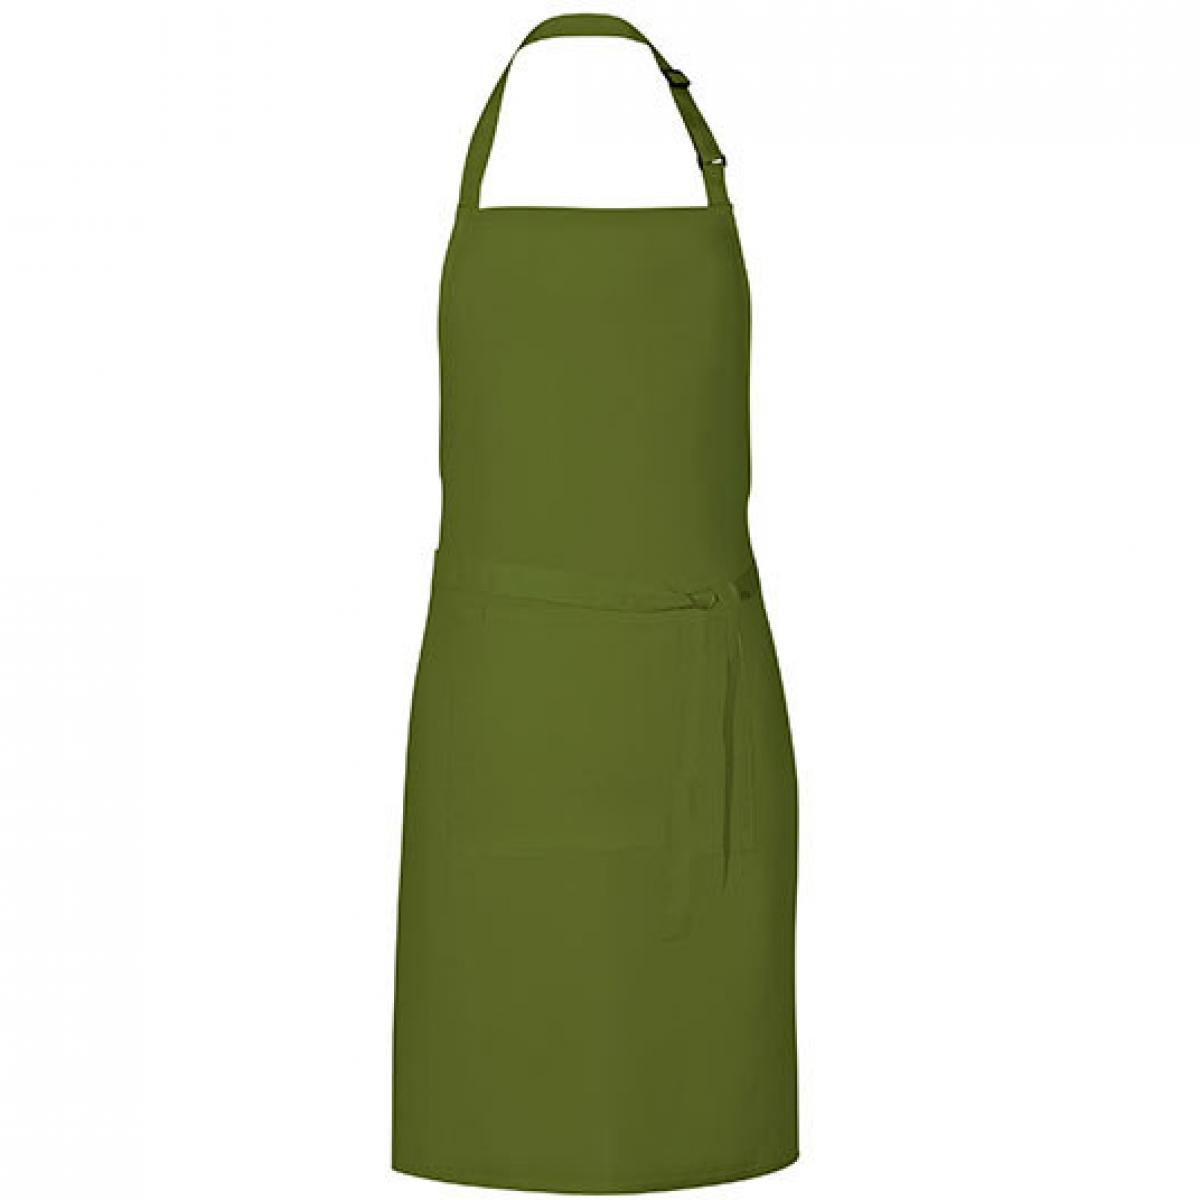 Hersteller: Link Kitchen Wear Herstellernummer: GS8572 Artikelbezeichnung: Grill Apron - 85 x 72 cm - Waschbar bis 60 °C Farbe: Olive (ca. Pantone 378)